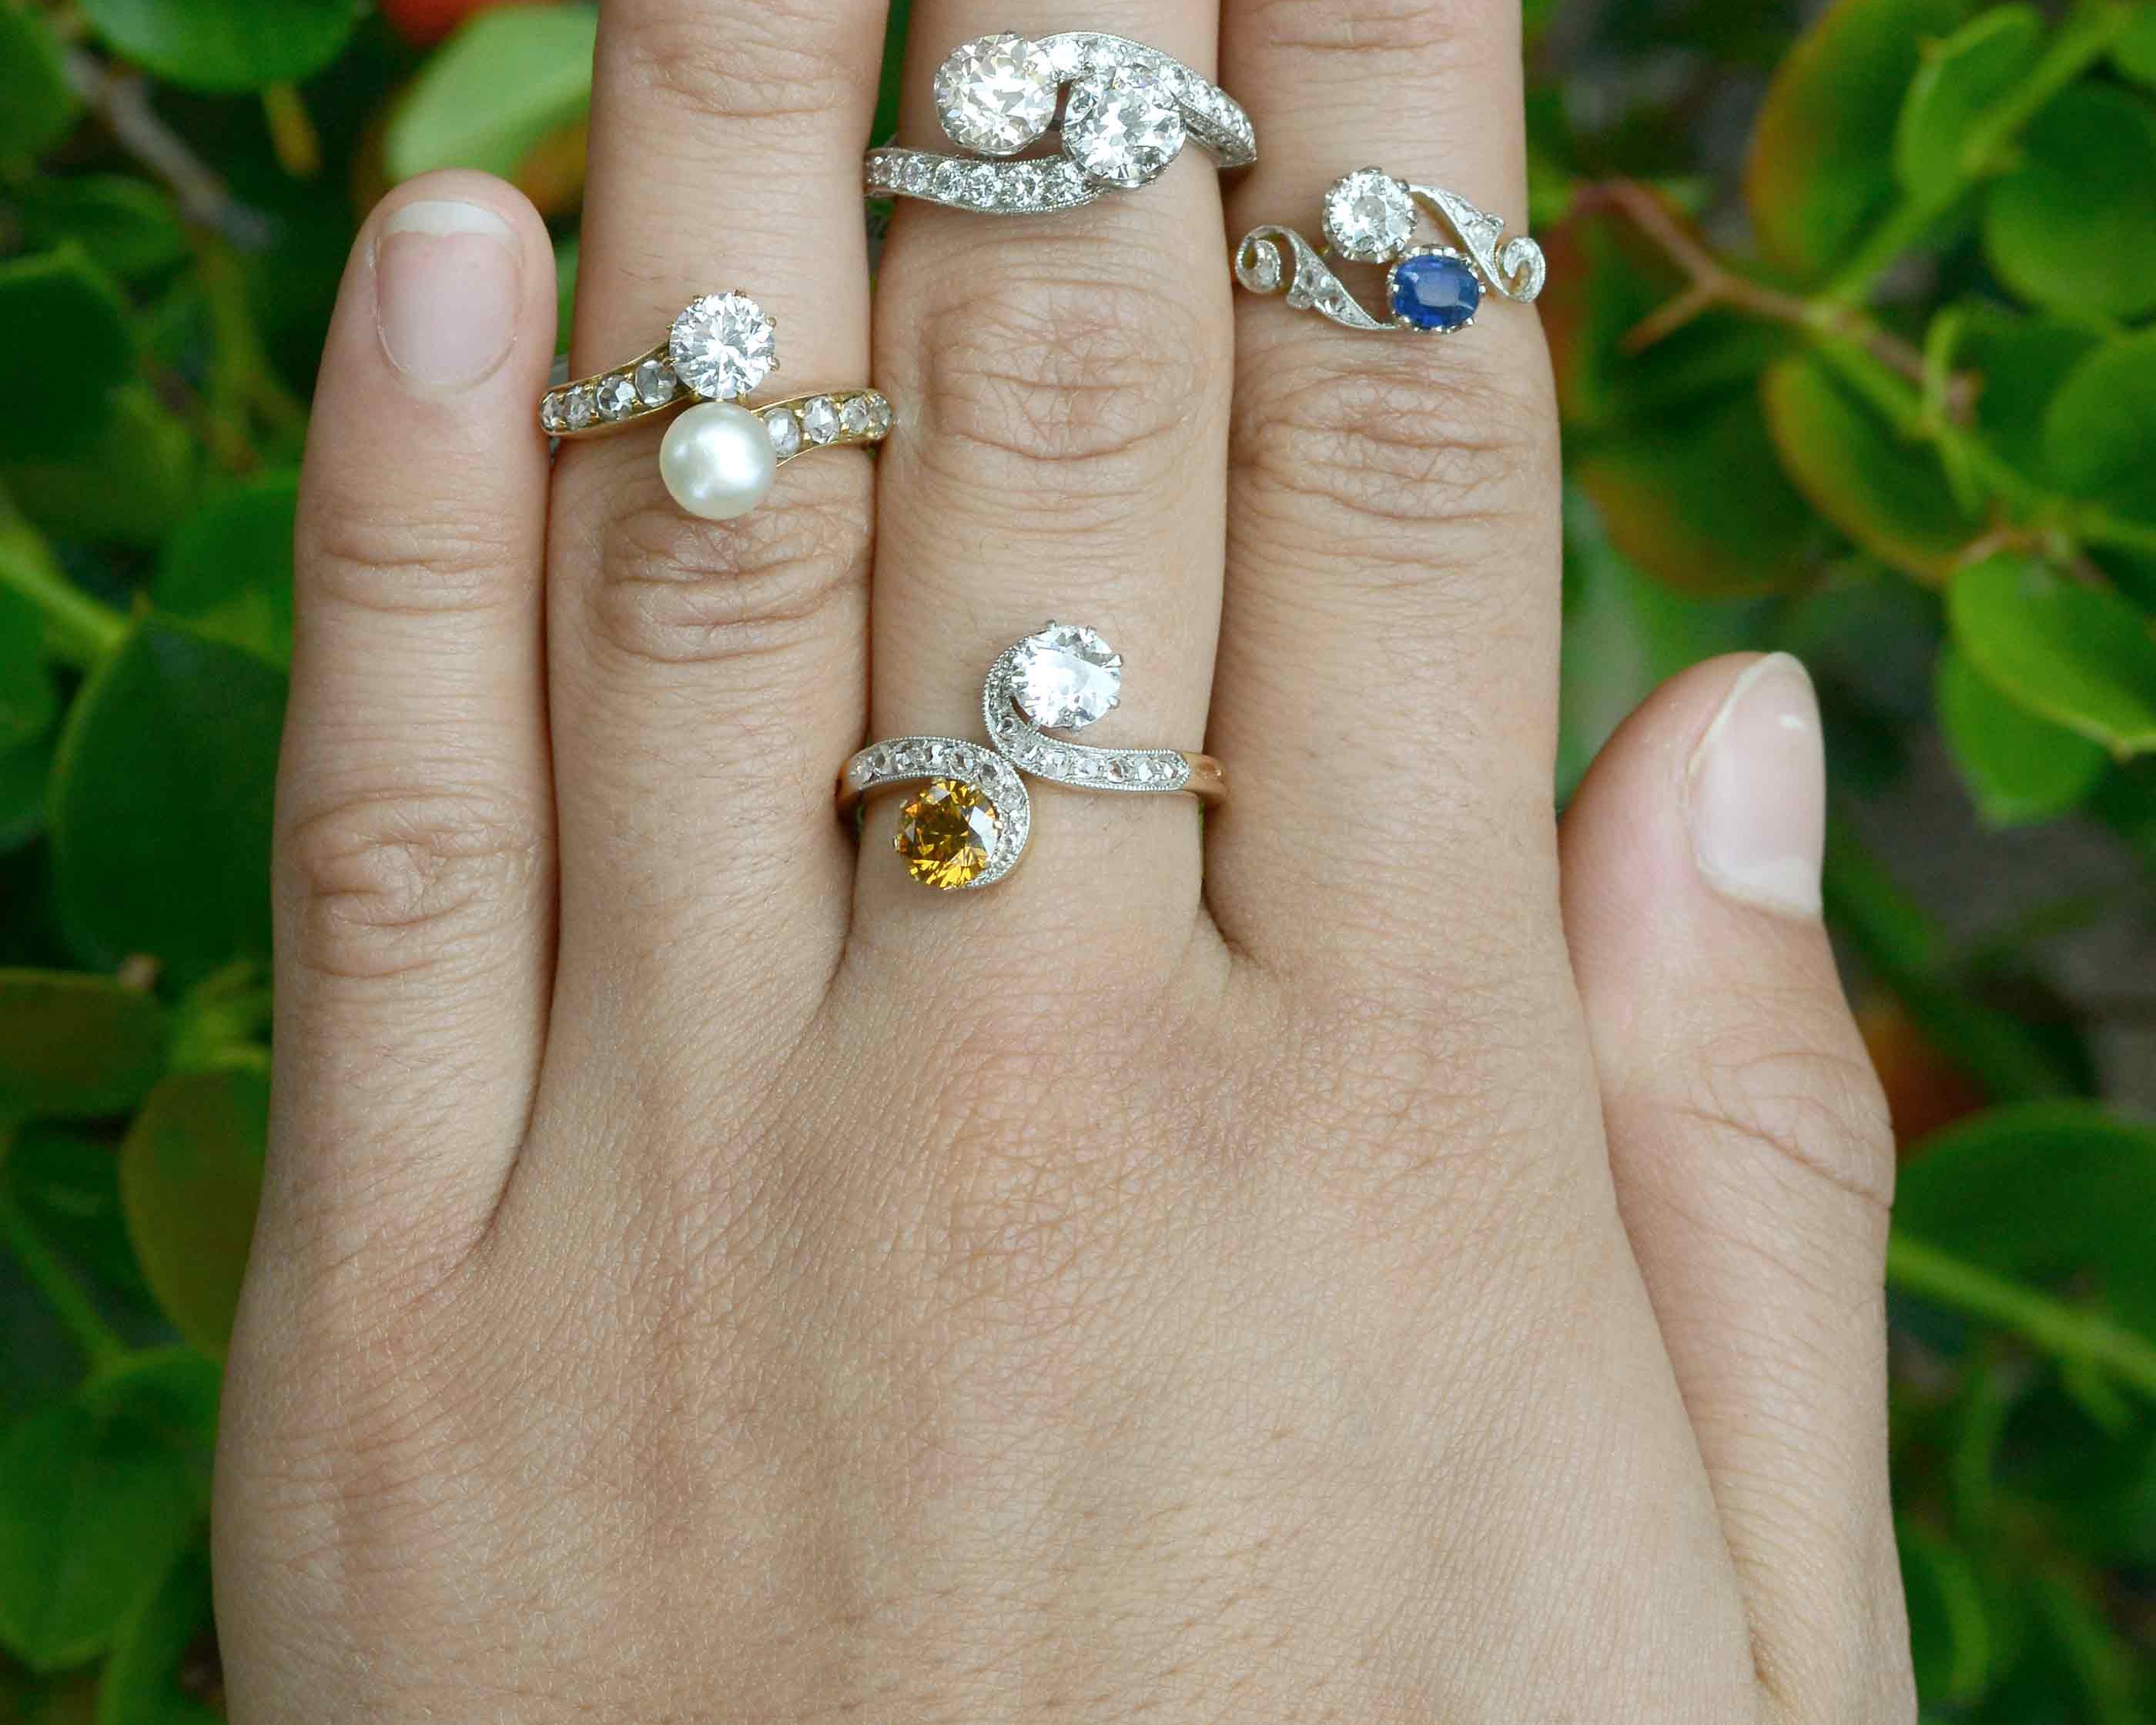 2 stone diamond and gemstone wedding rings.